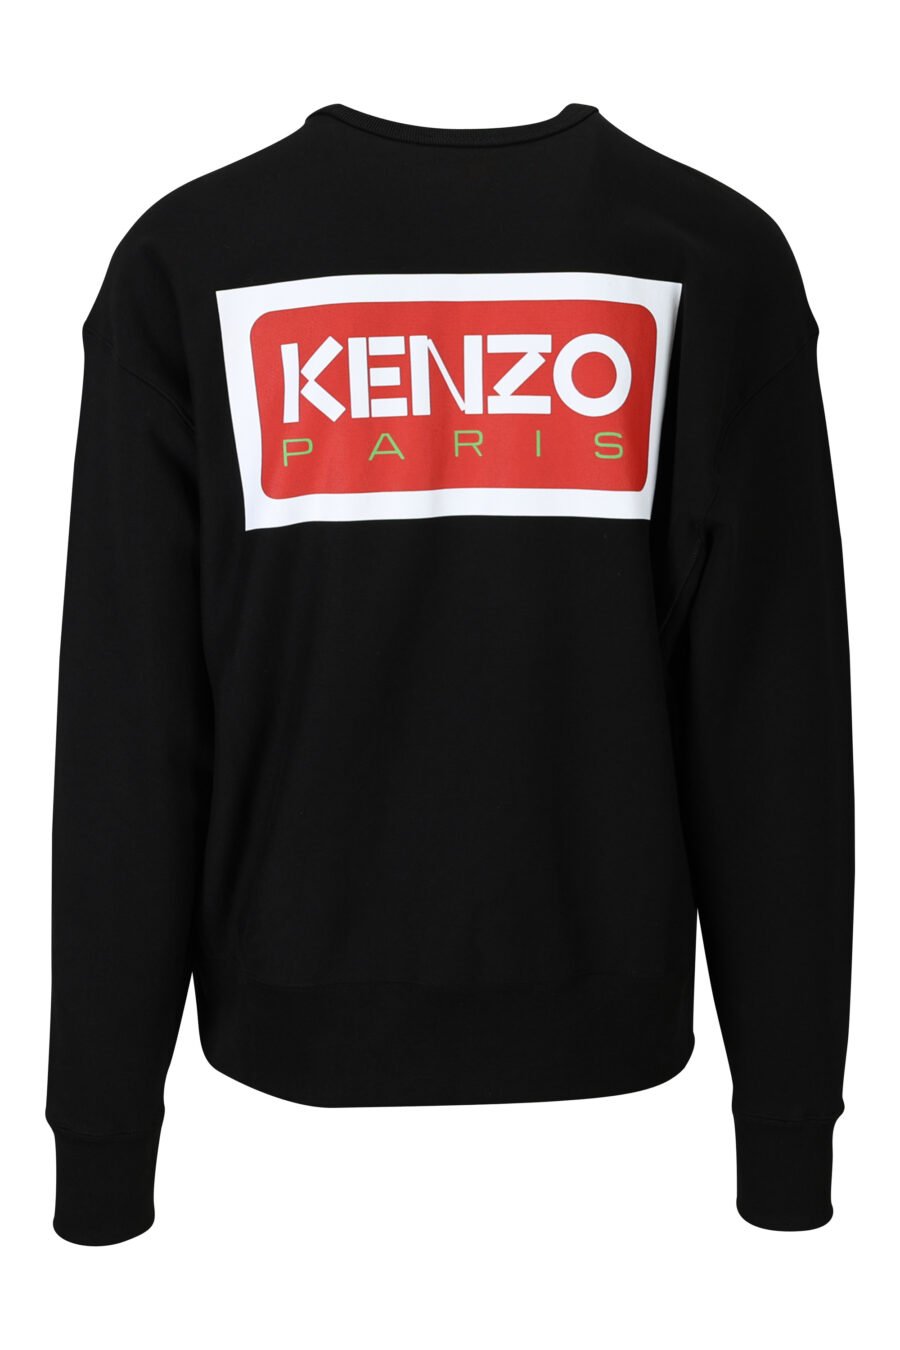 Sweat oversize noir avec mini logo "kenzo paris" - 3612230537675 1